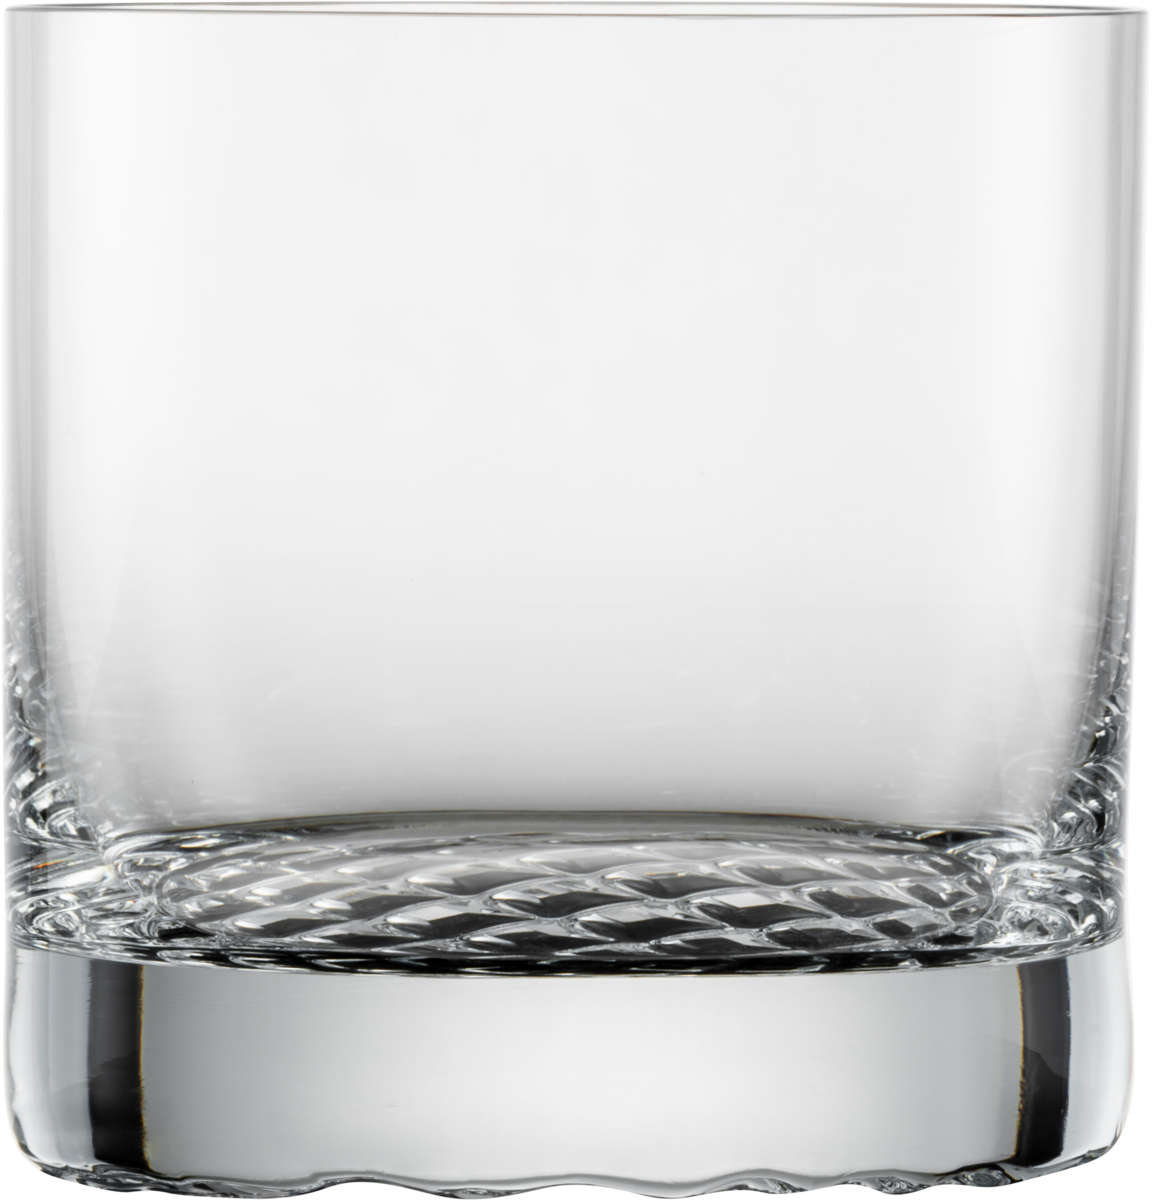 Whisky Tumbler | Perspective - Schott Zwiesel | 400 ml